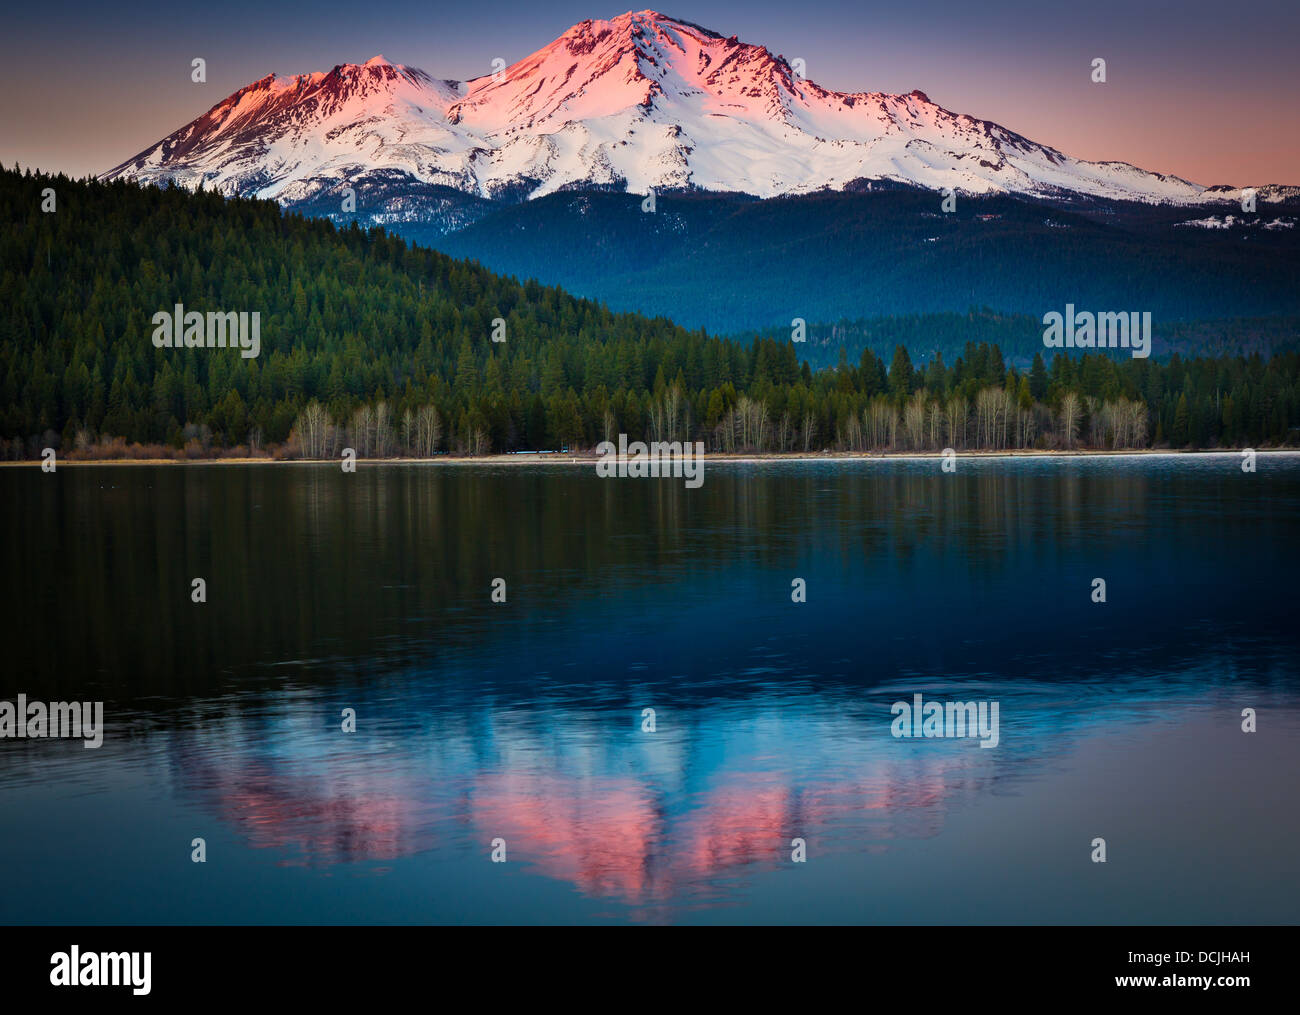 Mount Shasta im nahe gelegenen See Siskiyou, Kalifornien Stockfoto